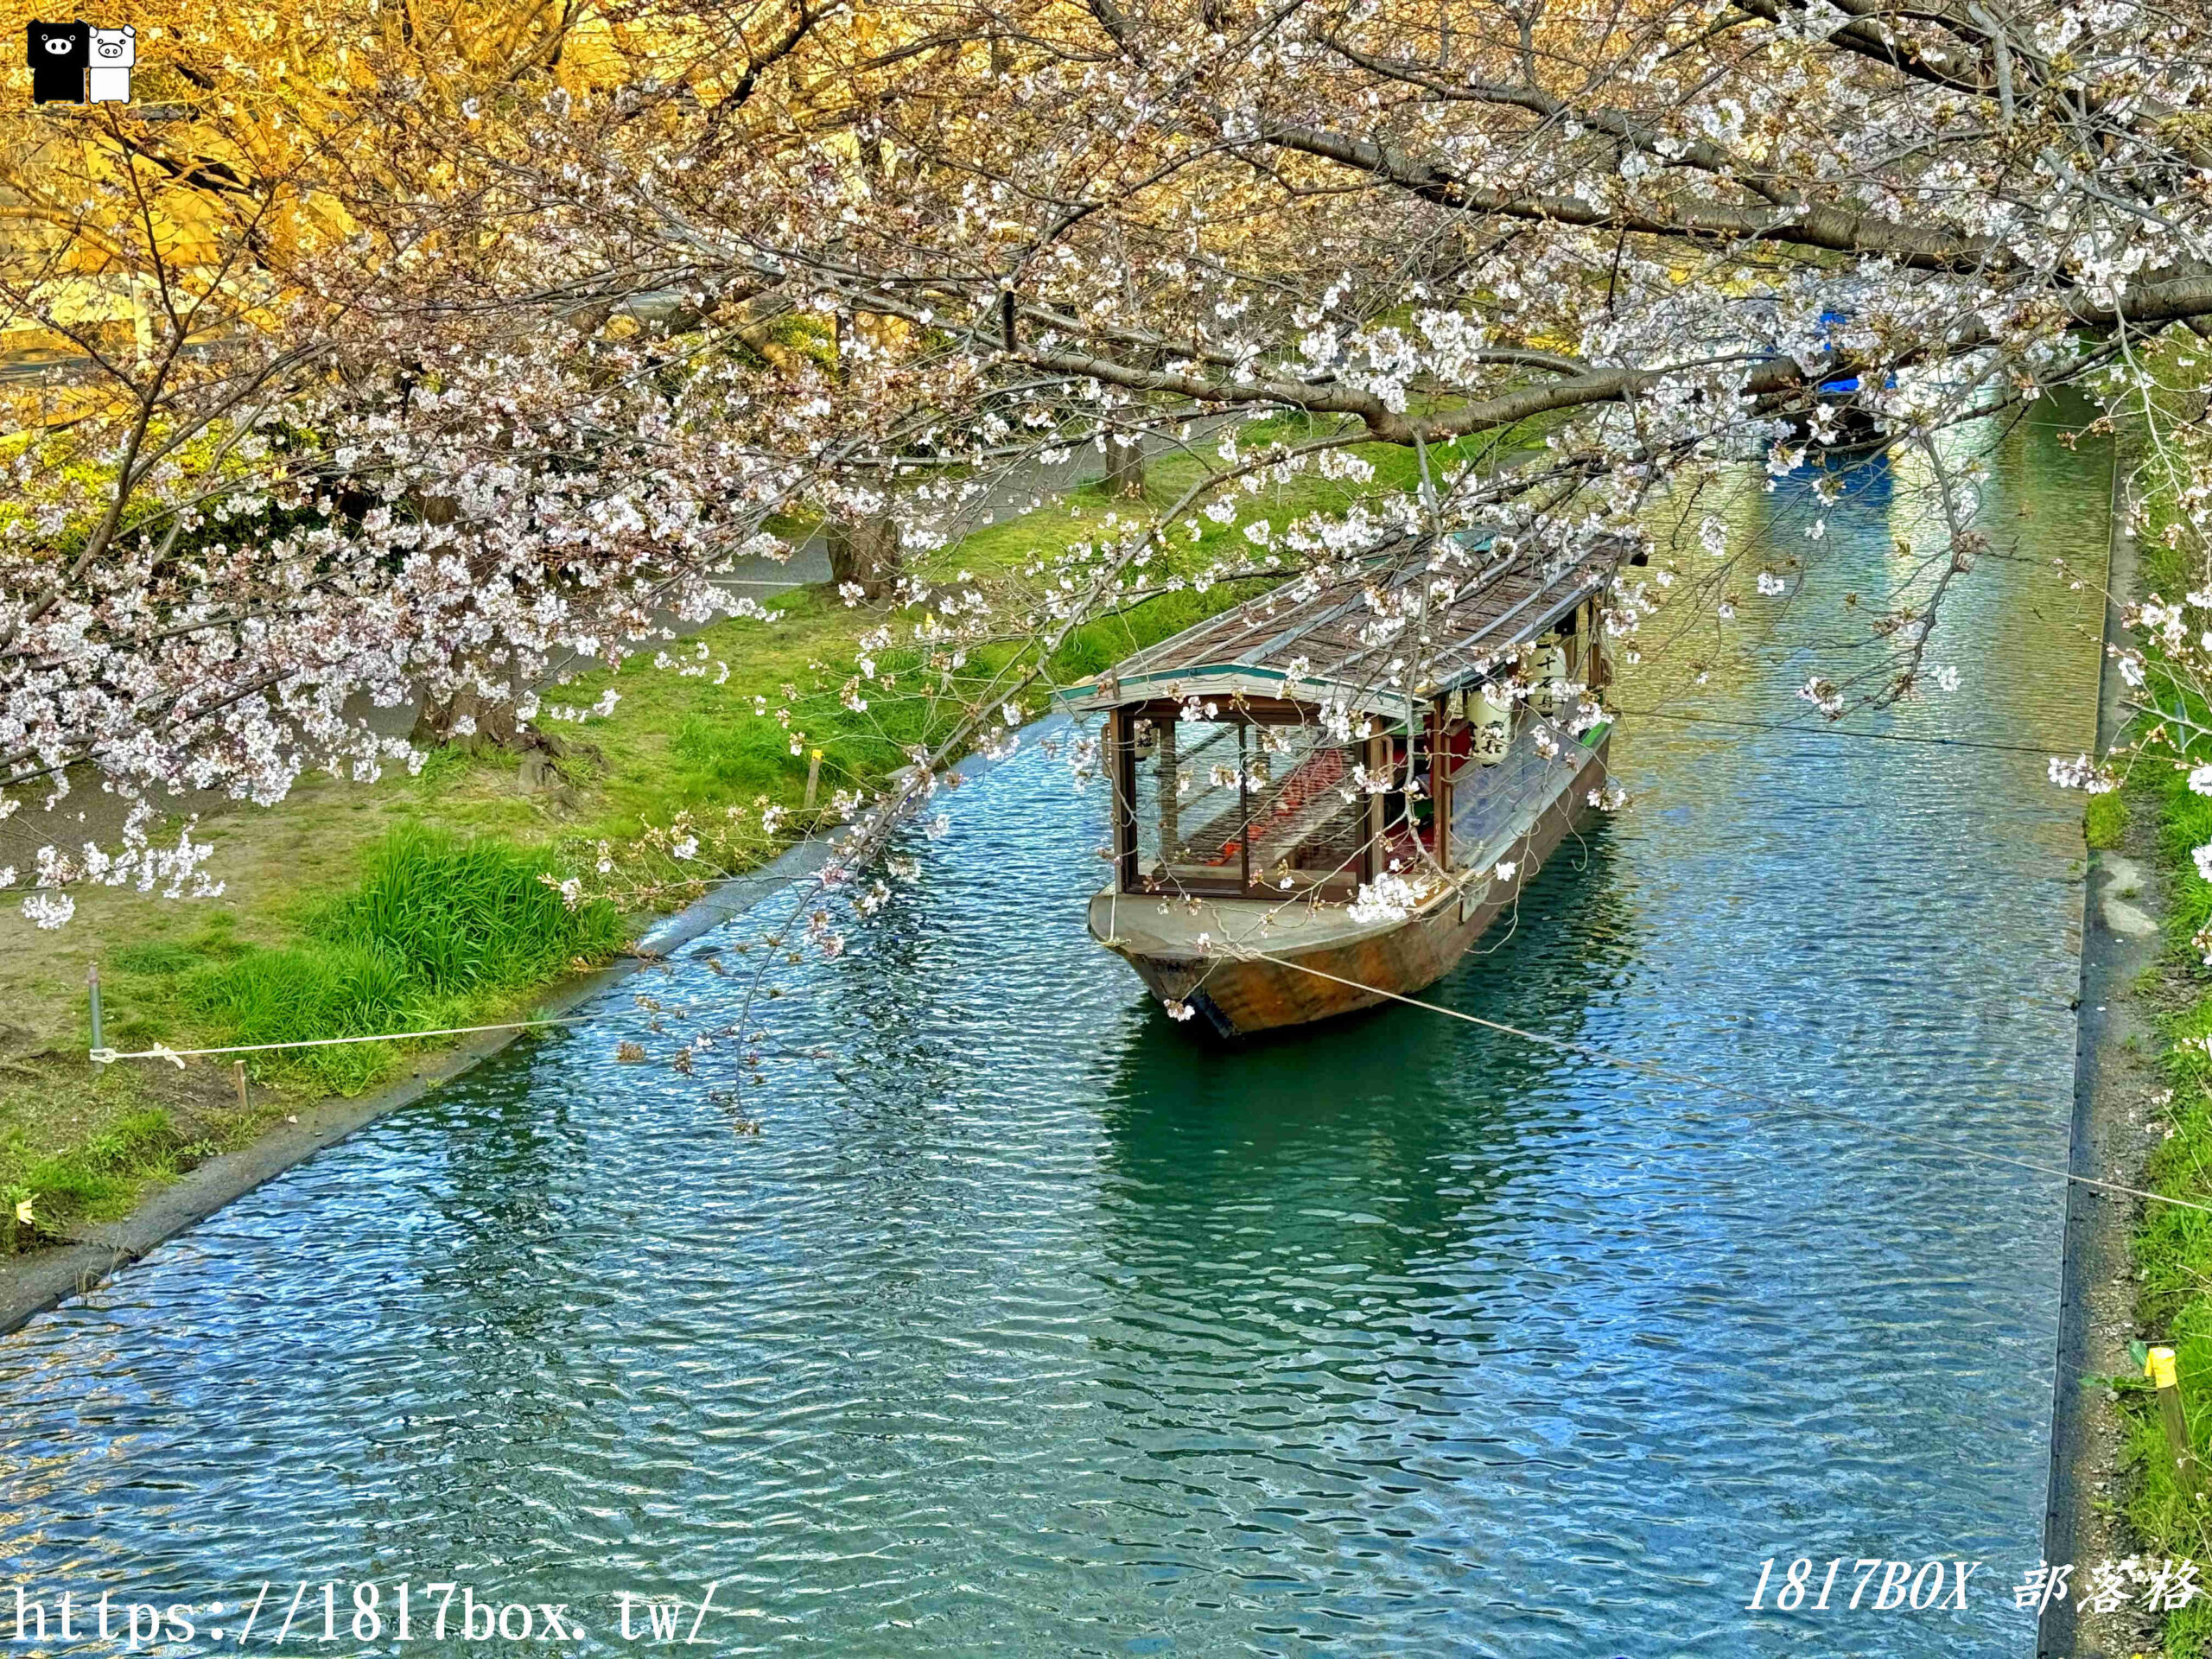 【京都景點】伏見十石舟。欣賞日本酒鄉的風景。京都郊區賞櫻秘境